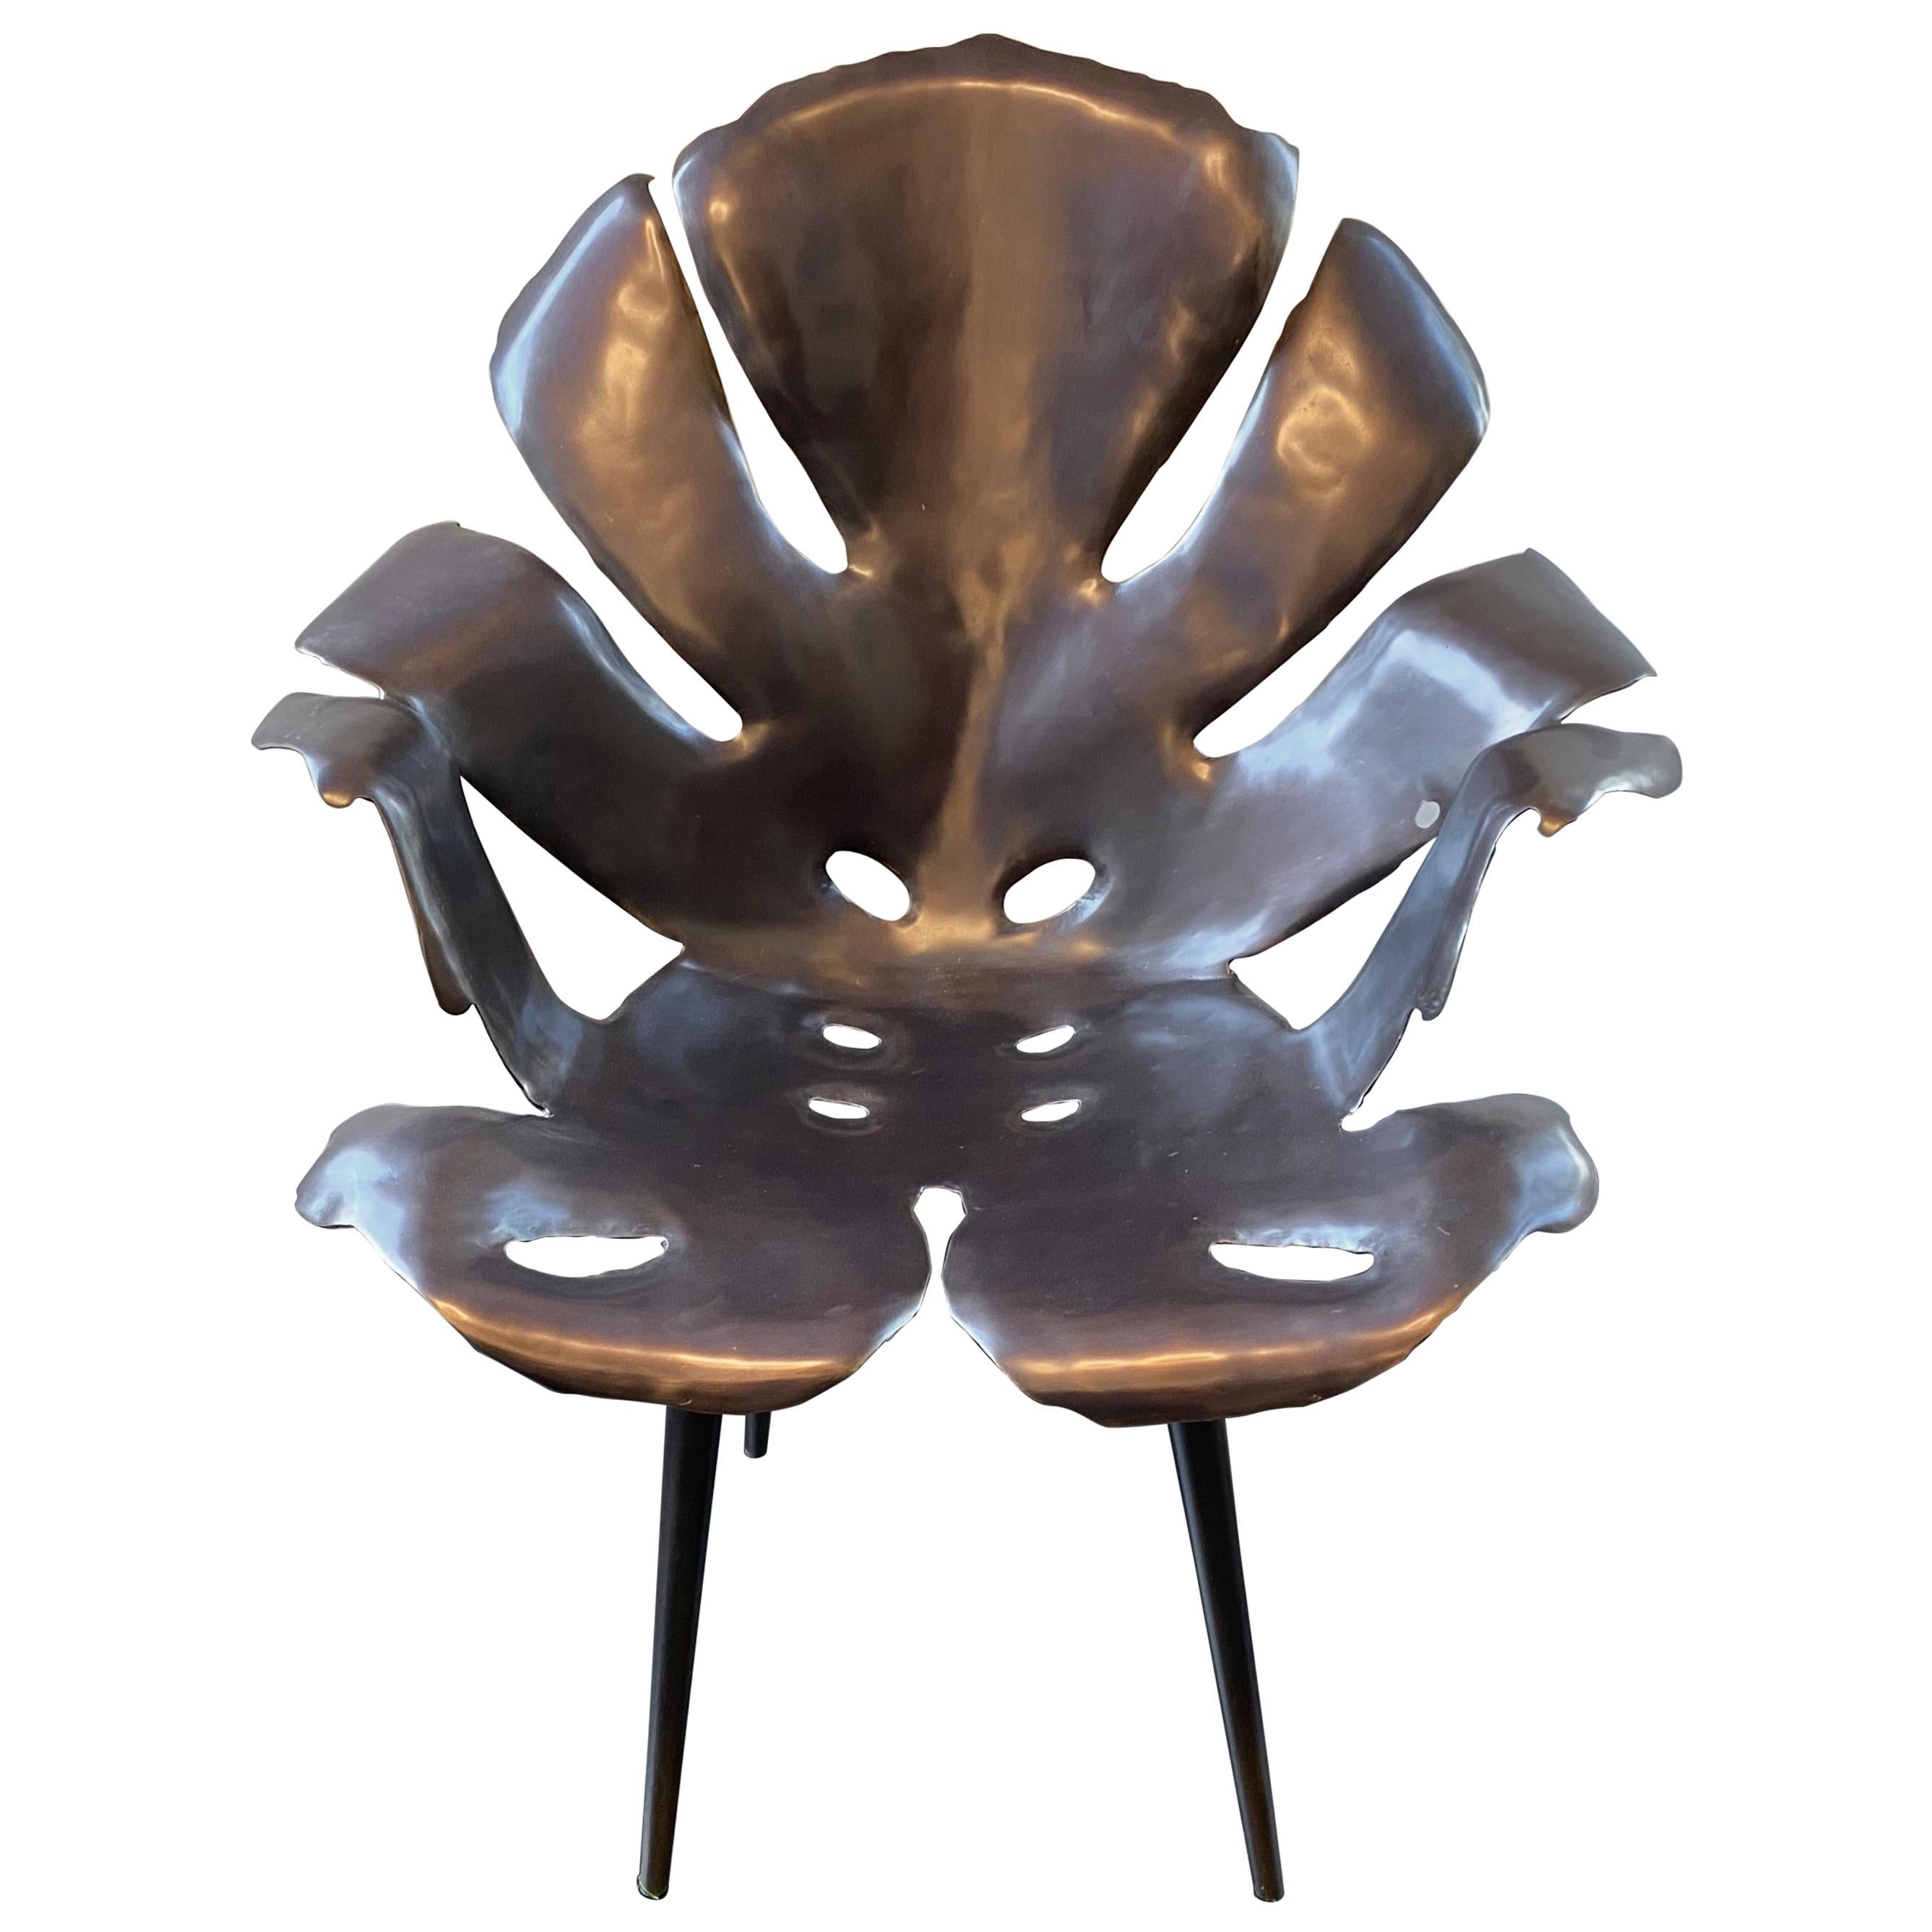 La chaise de salle à manger Philodendron a été sculptée à la main ; assurez-vous qu'elle est aussi confortable que magnifique ! Chaque chaise pèse environ 40 livres, ce qui la rend bien adaptée aux conditions extérieures, y compris les rafales de